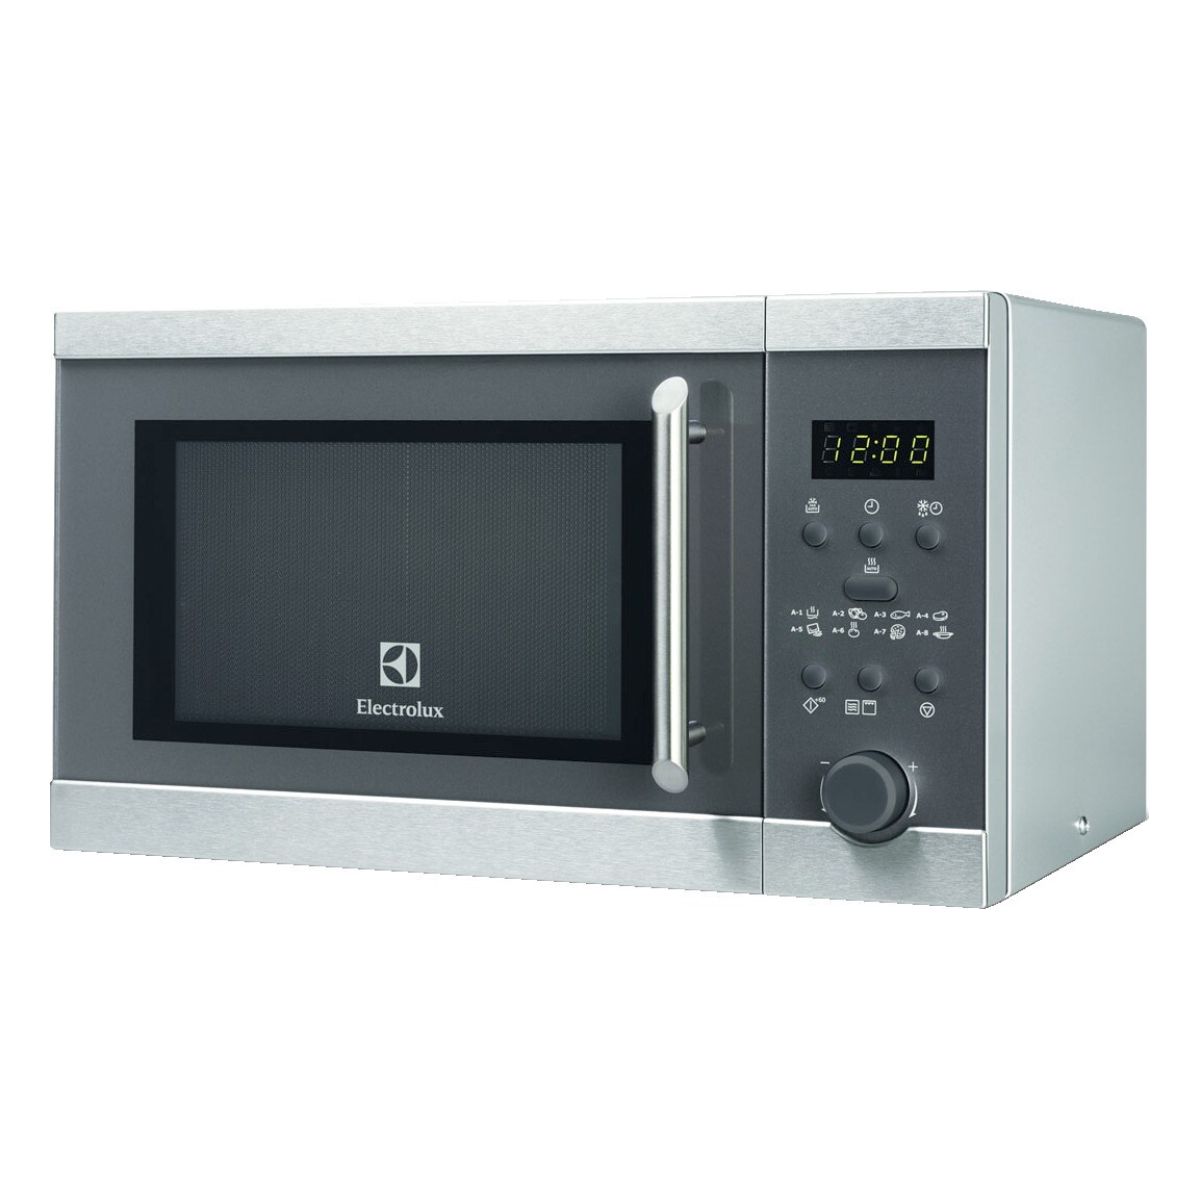 Микроволновая печь Electrolux EMS20300OX